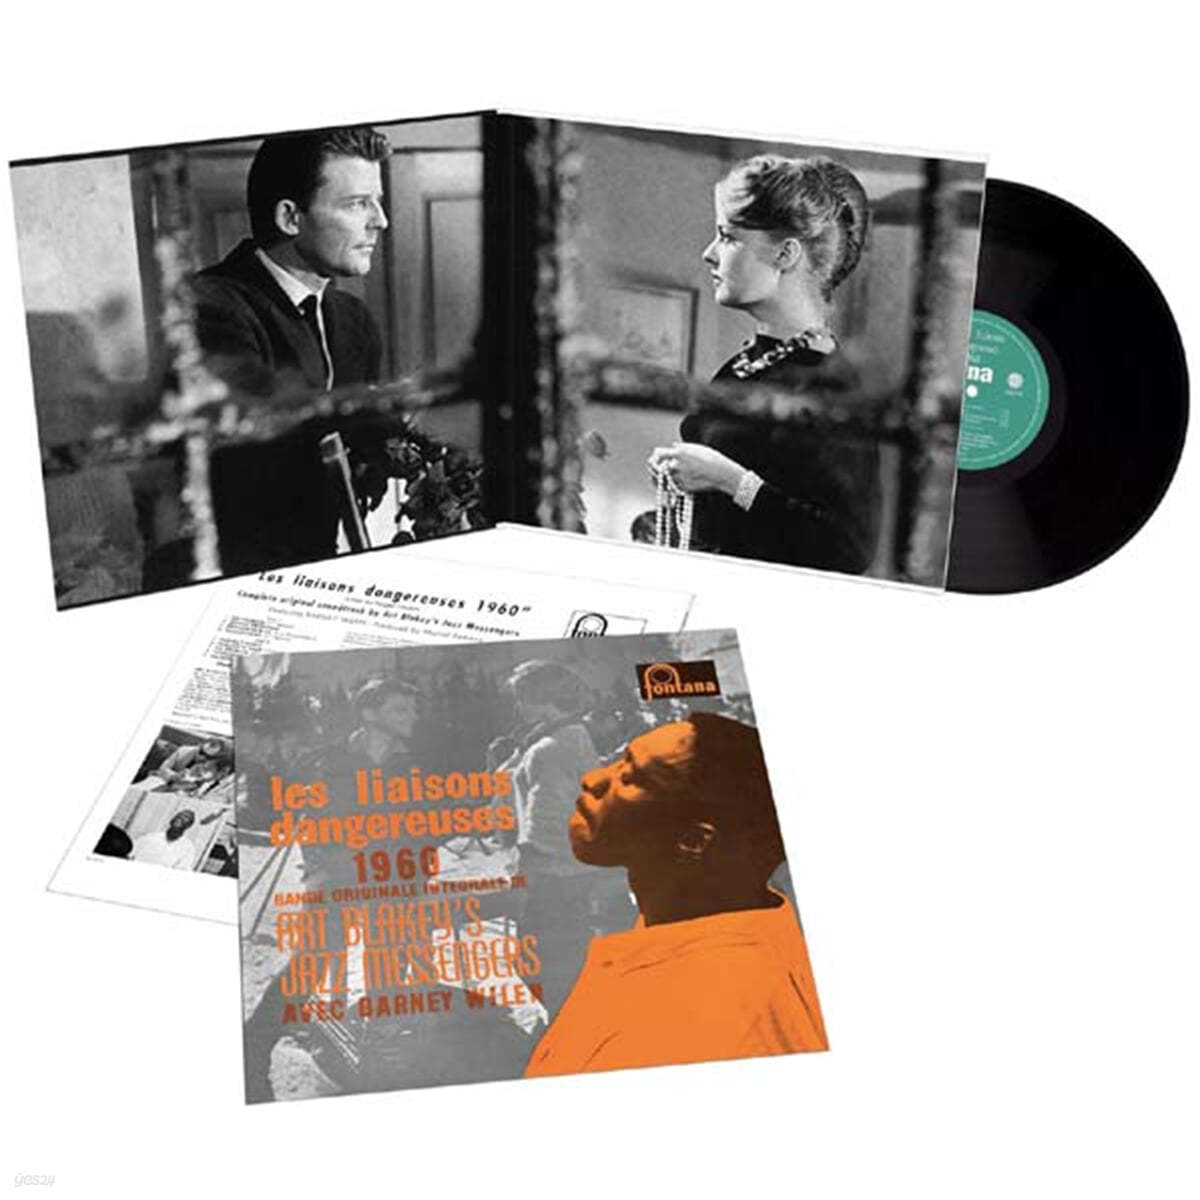 Art Blakey & The Jazz Messengers (아트 블래키 & 재즈 메신저스) - Les liaisons dangereuses 1960 [LP]